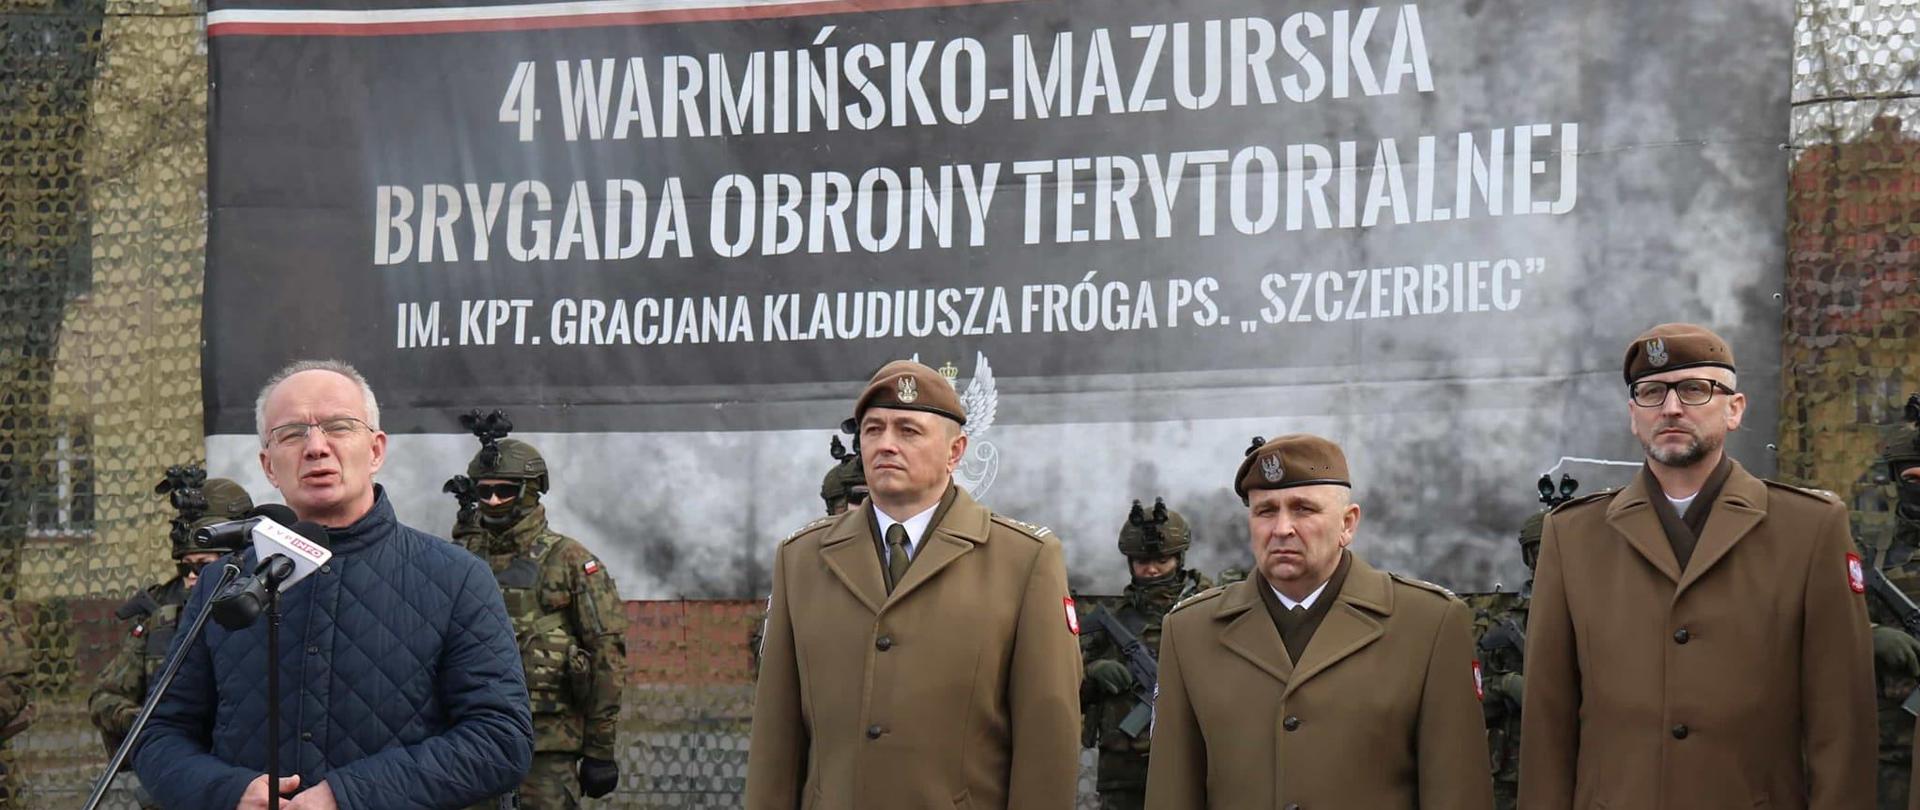 Na zdjęciu od prawej trzech w wojskowych galowych mundurach. Z lewej przemawia starszy pan w niebieskiej kurtce. W tle baner z napisem "4 warmińsko- mazurska brygada obrony terytorialnej".